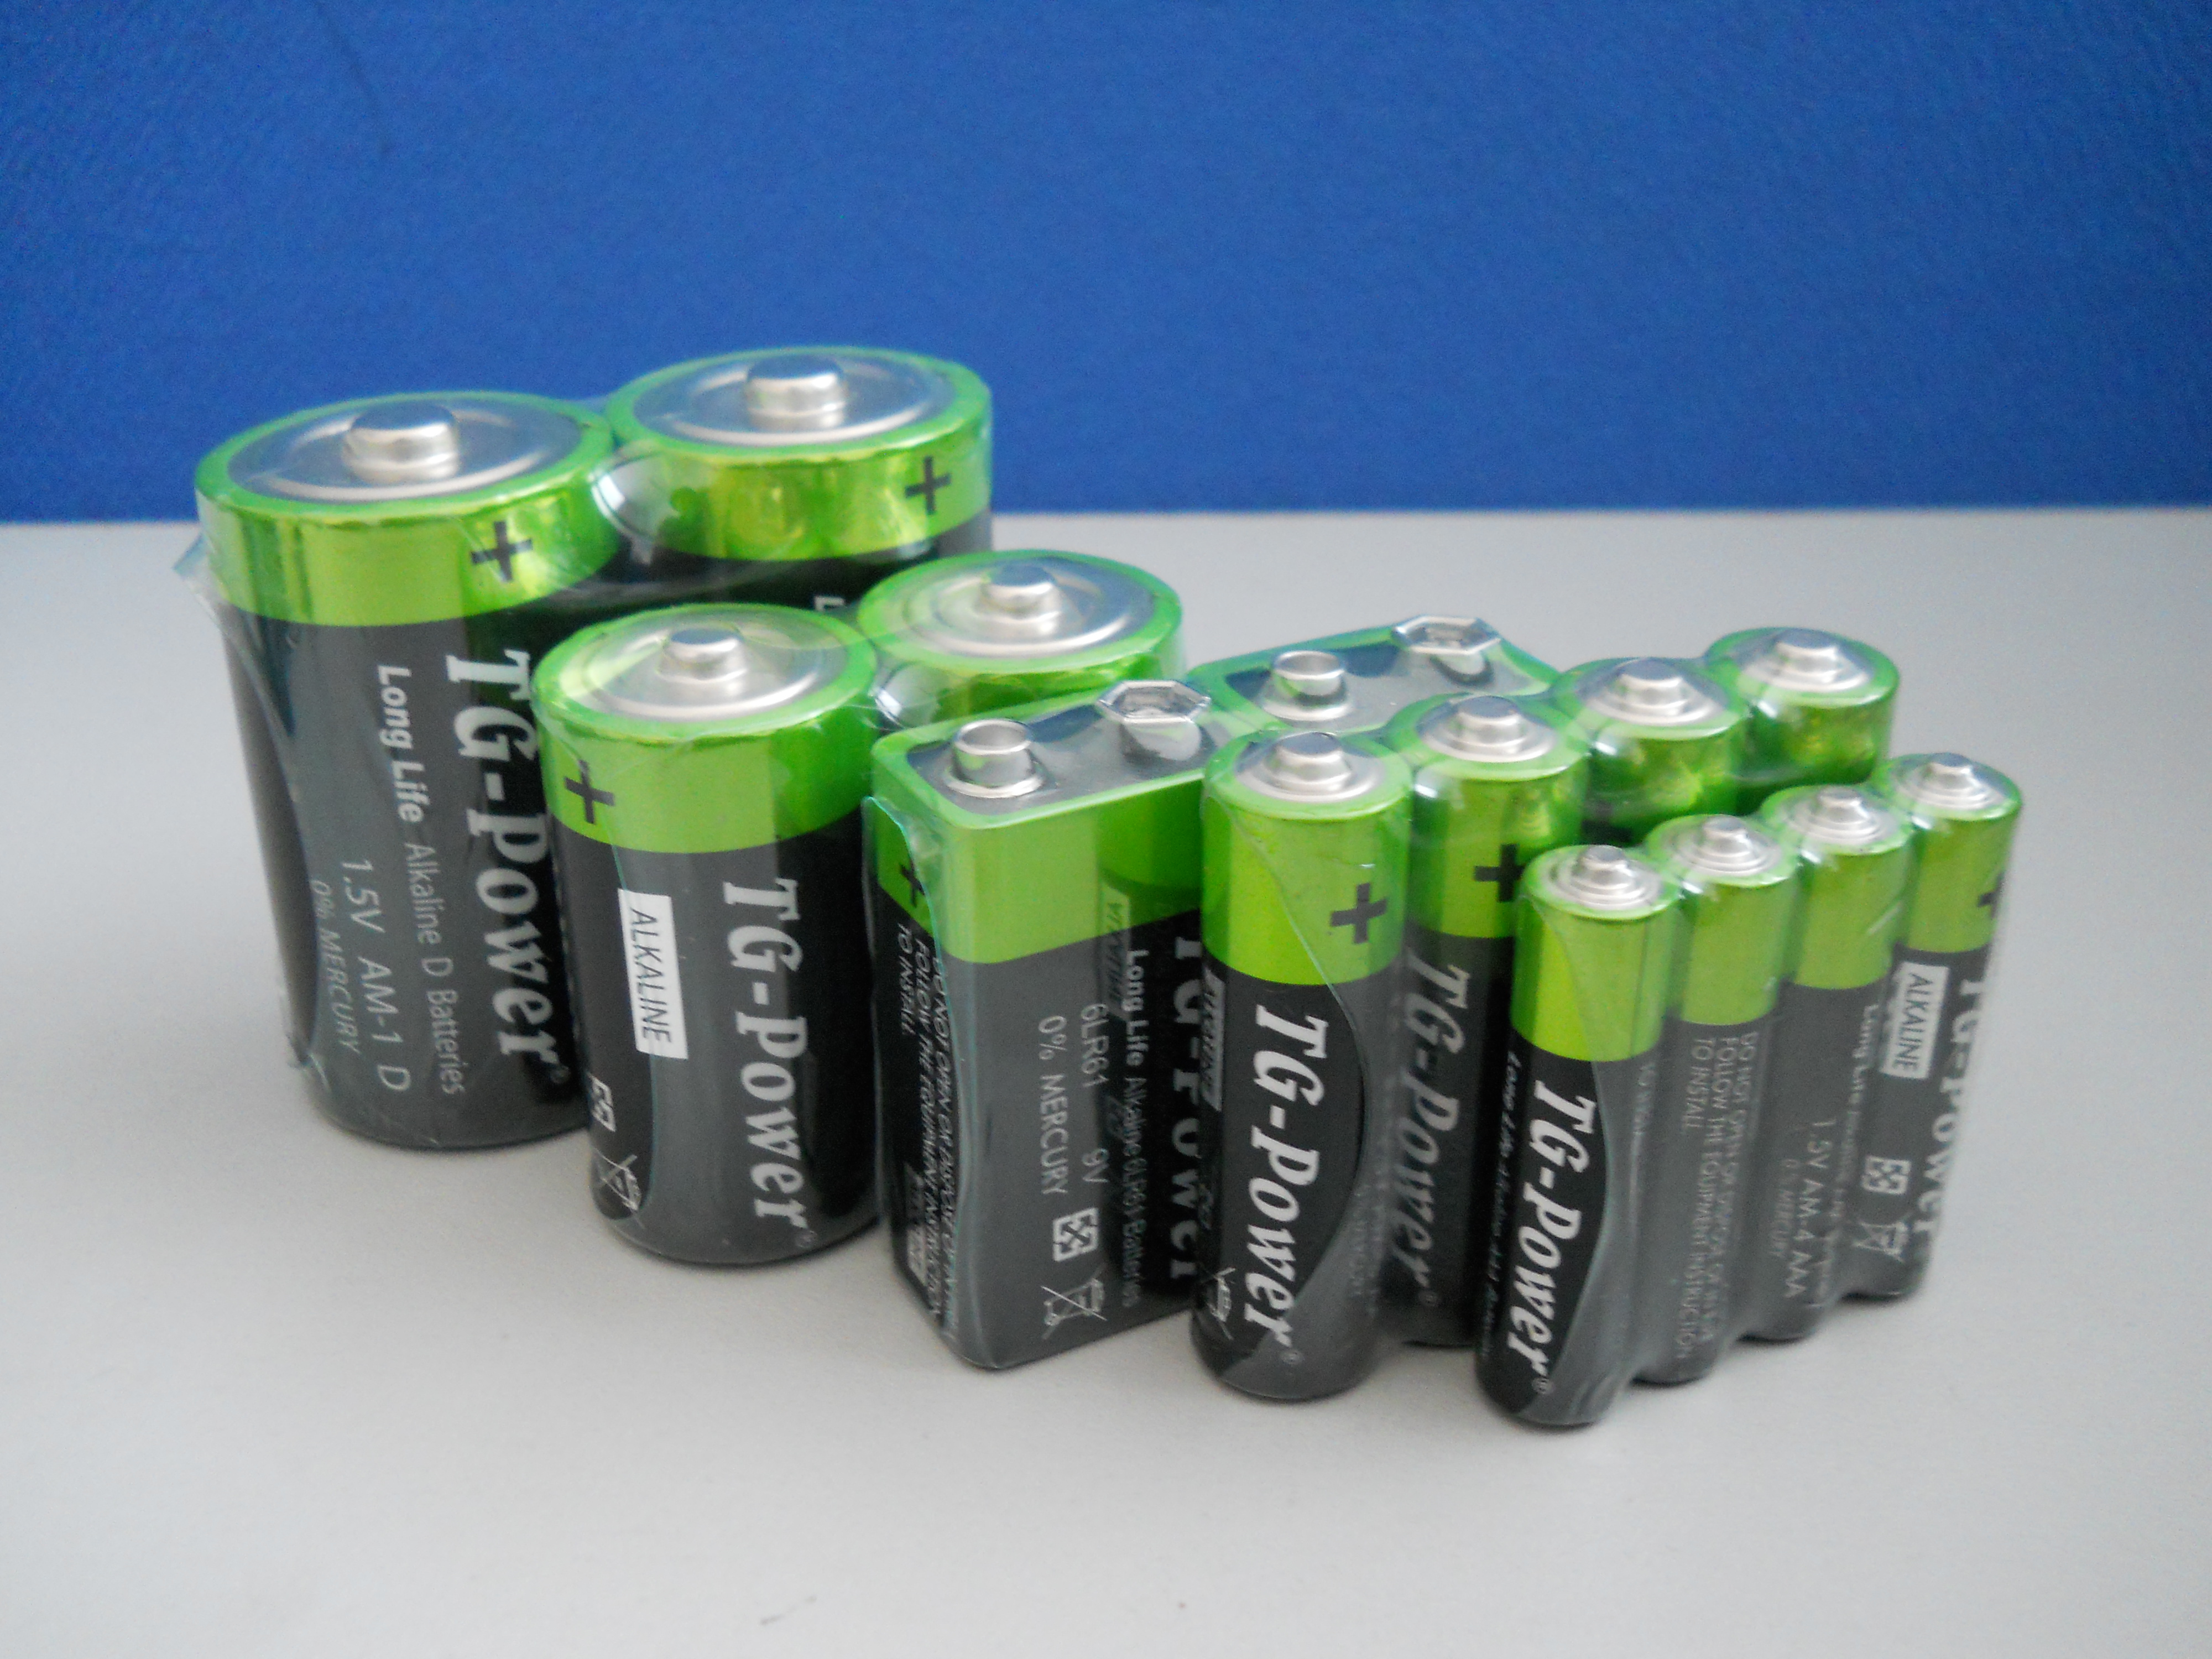 Ааа 1.5 v. Батарейки Alkaline AAA. Батарейки типа ААА 1.5V аккумуляторные. Батарейка AAA 9v. AA AAA батарейки.